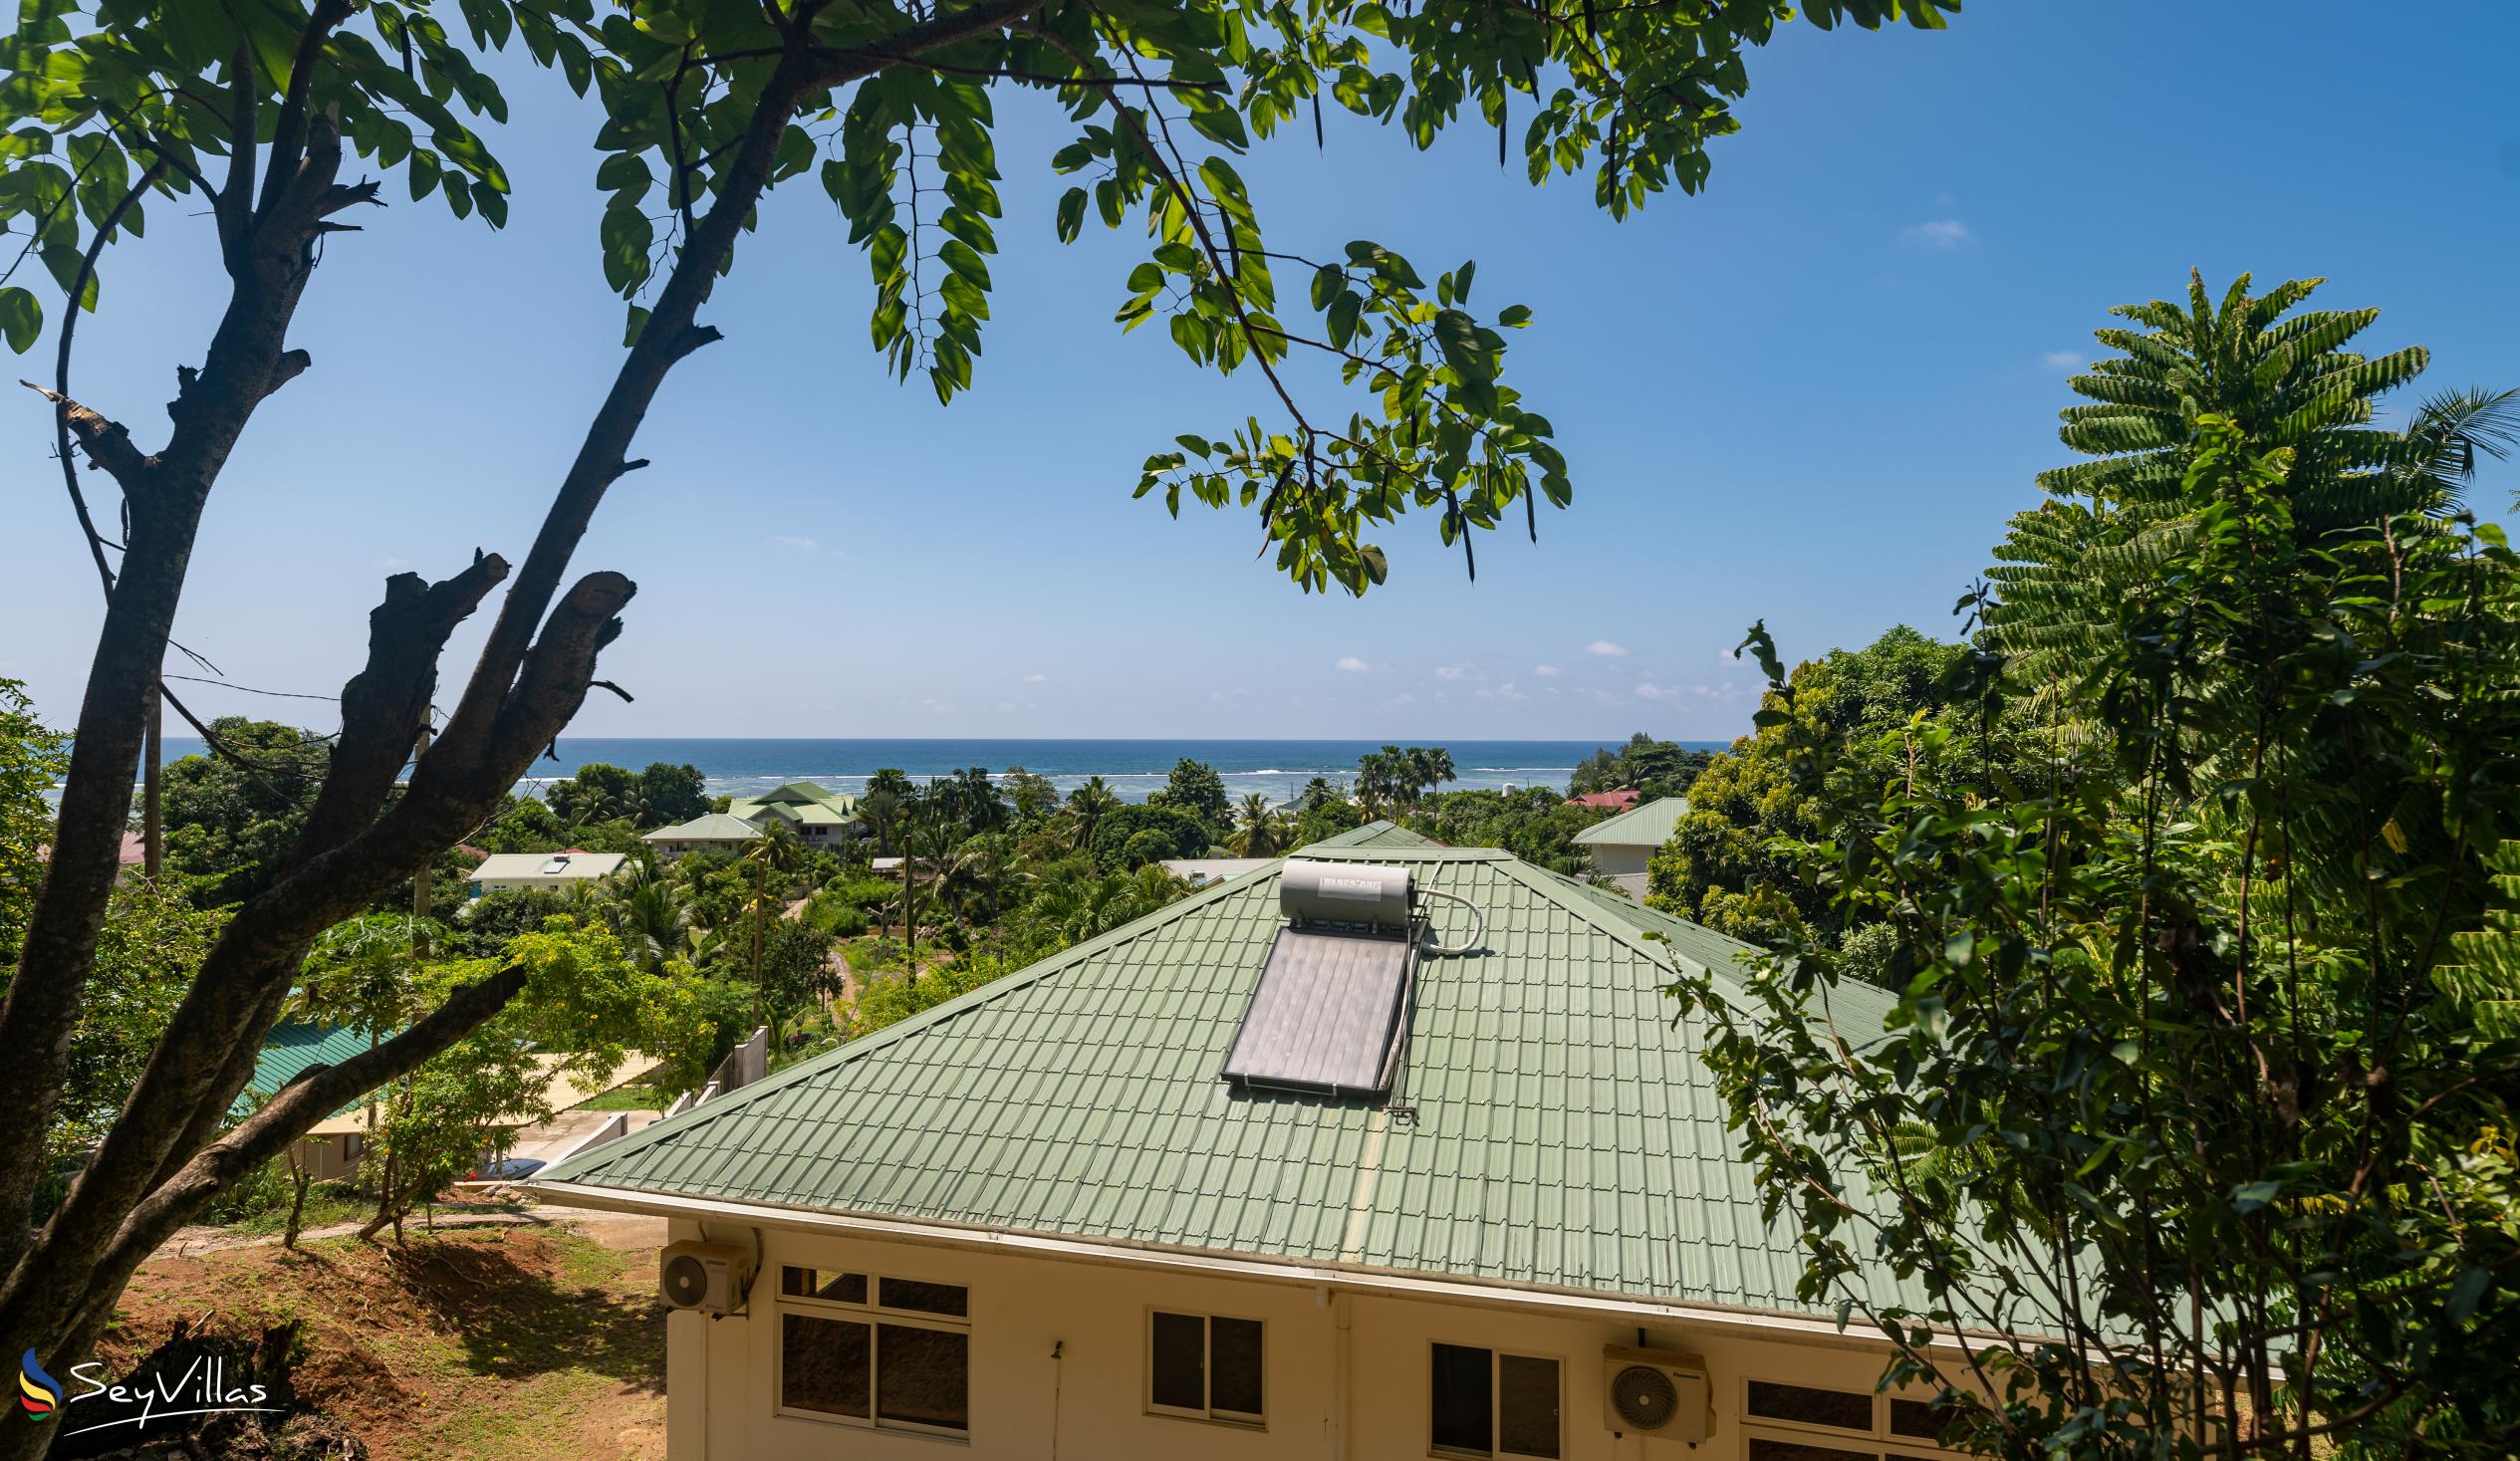 Foto 18: Maison Marikel - Aussenbereich - Mahé (Seychellen)